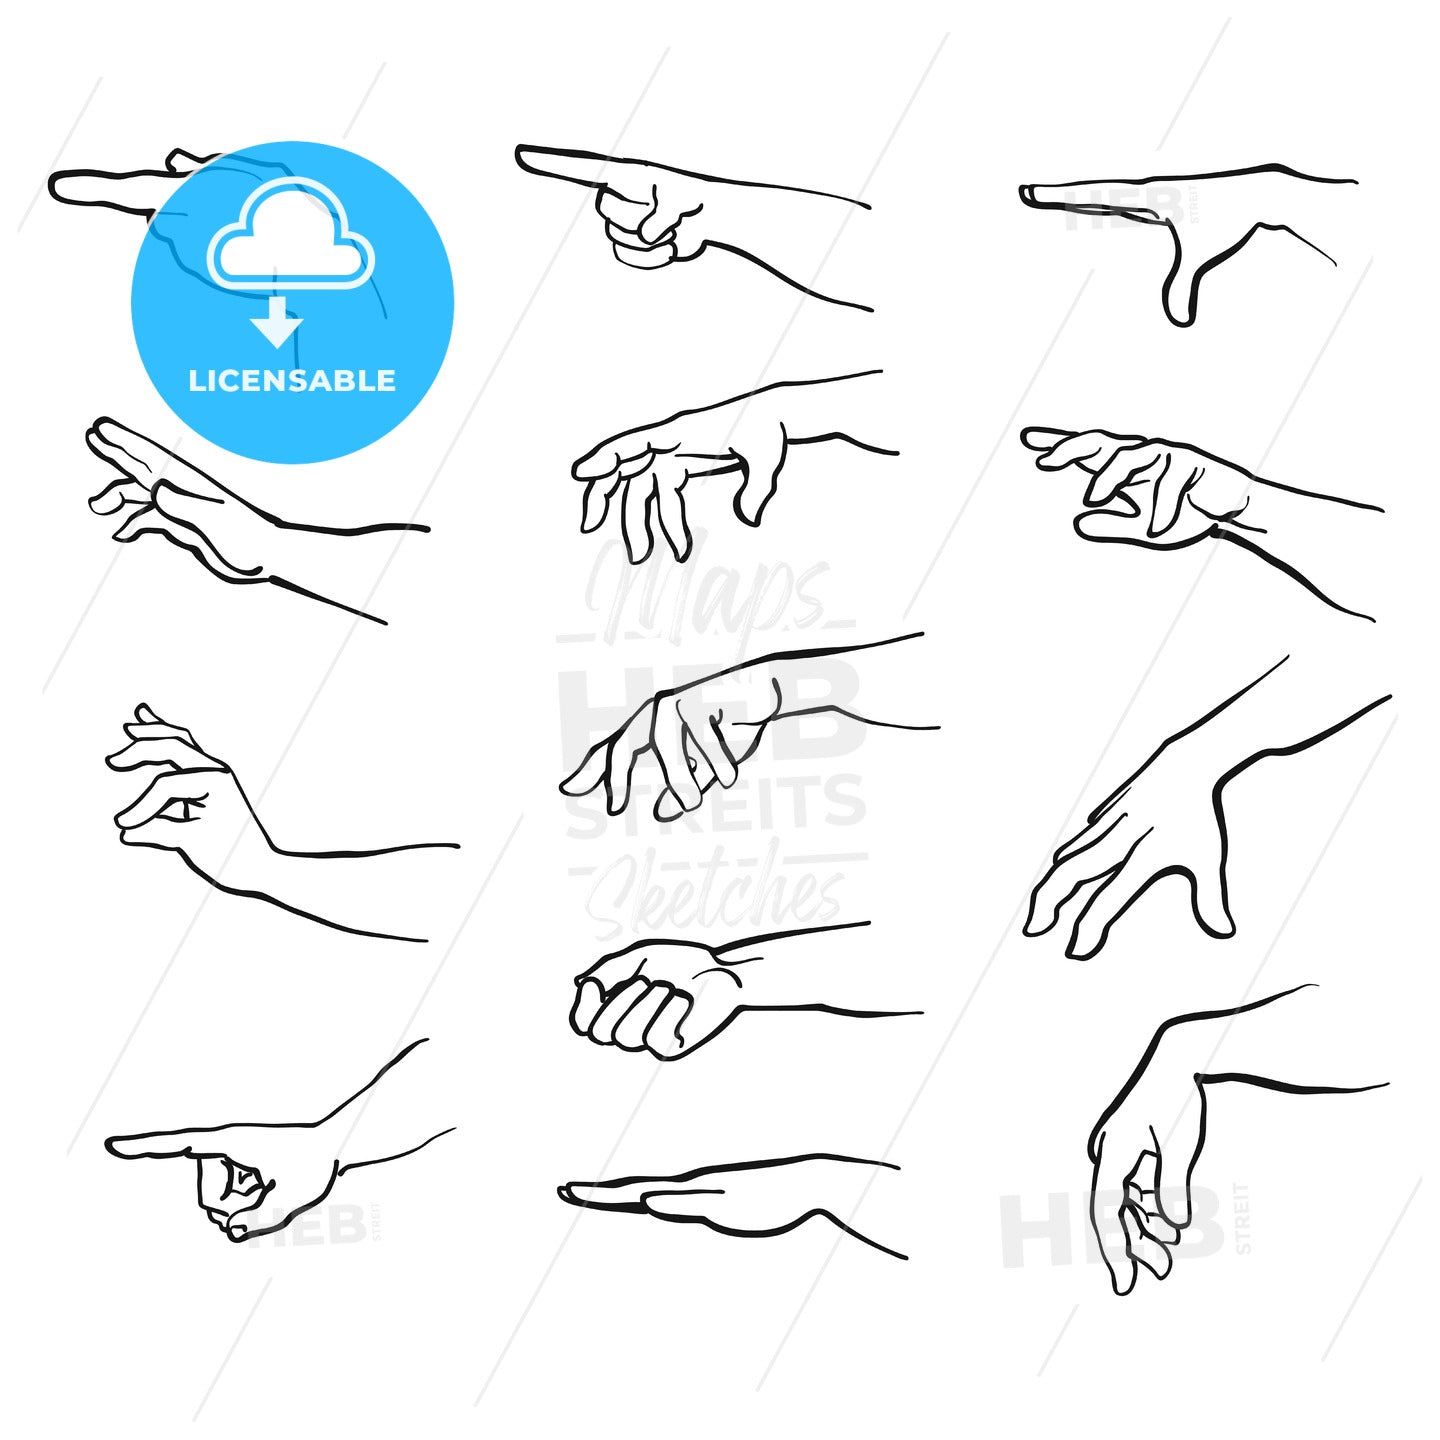 Hands gestures with arm – instant download